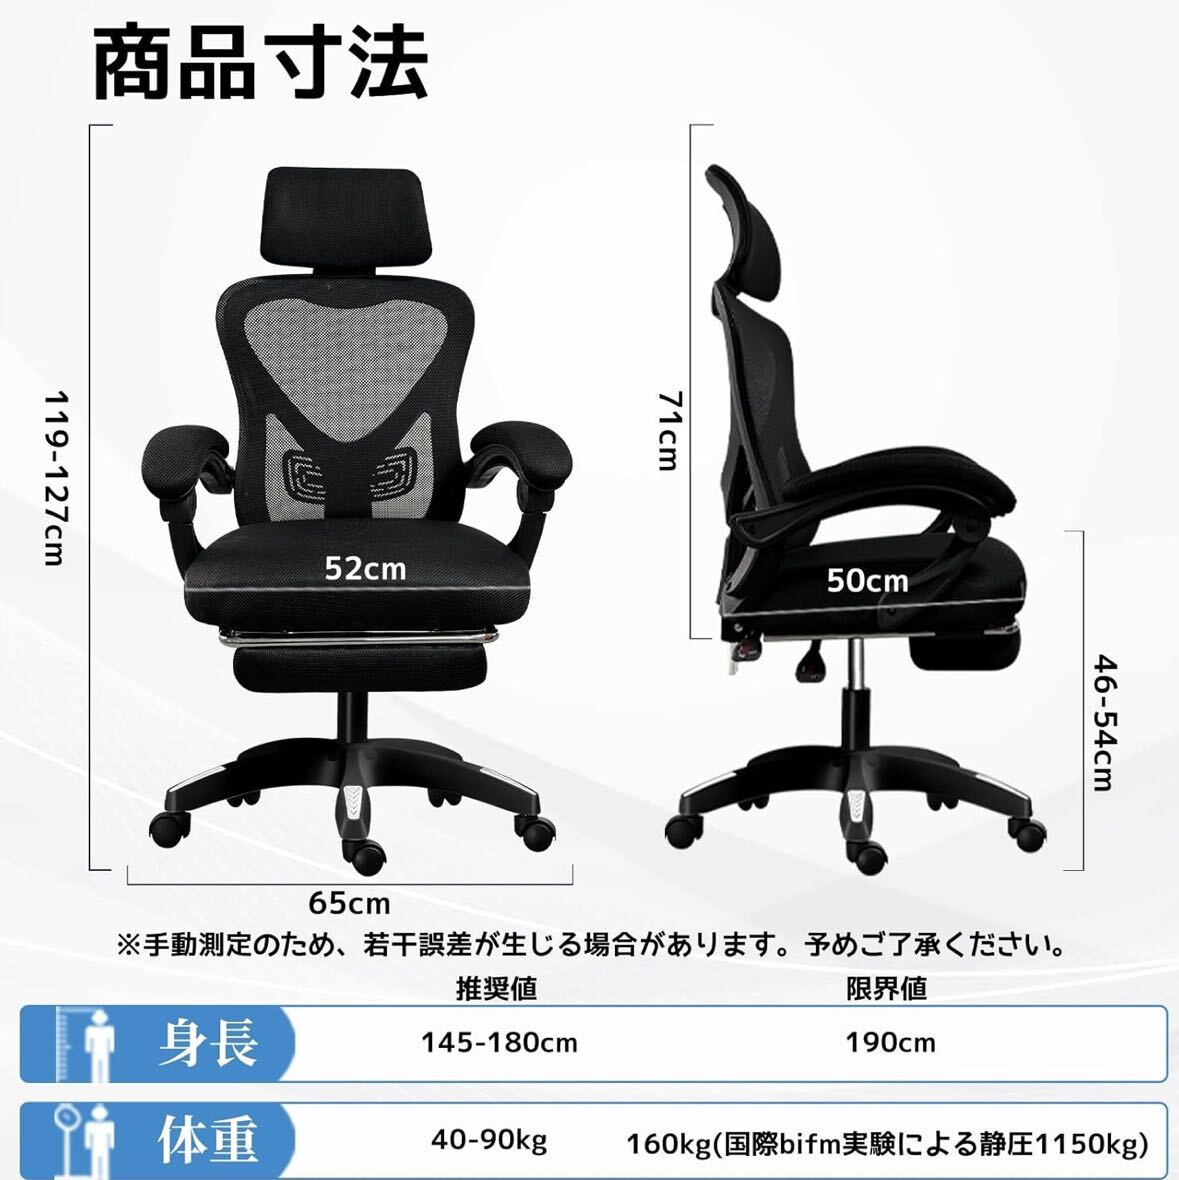  офис стул рабочий стул стул tere Work усталость нет наклонный кресло-качалка подкачка сиденья "дышит" сетка PC стул 